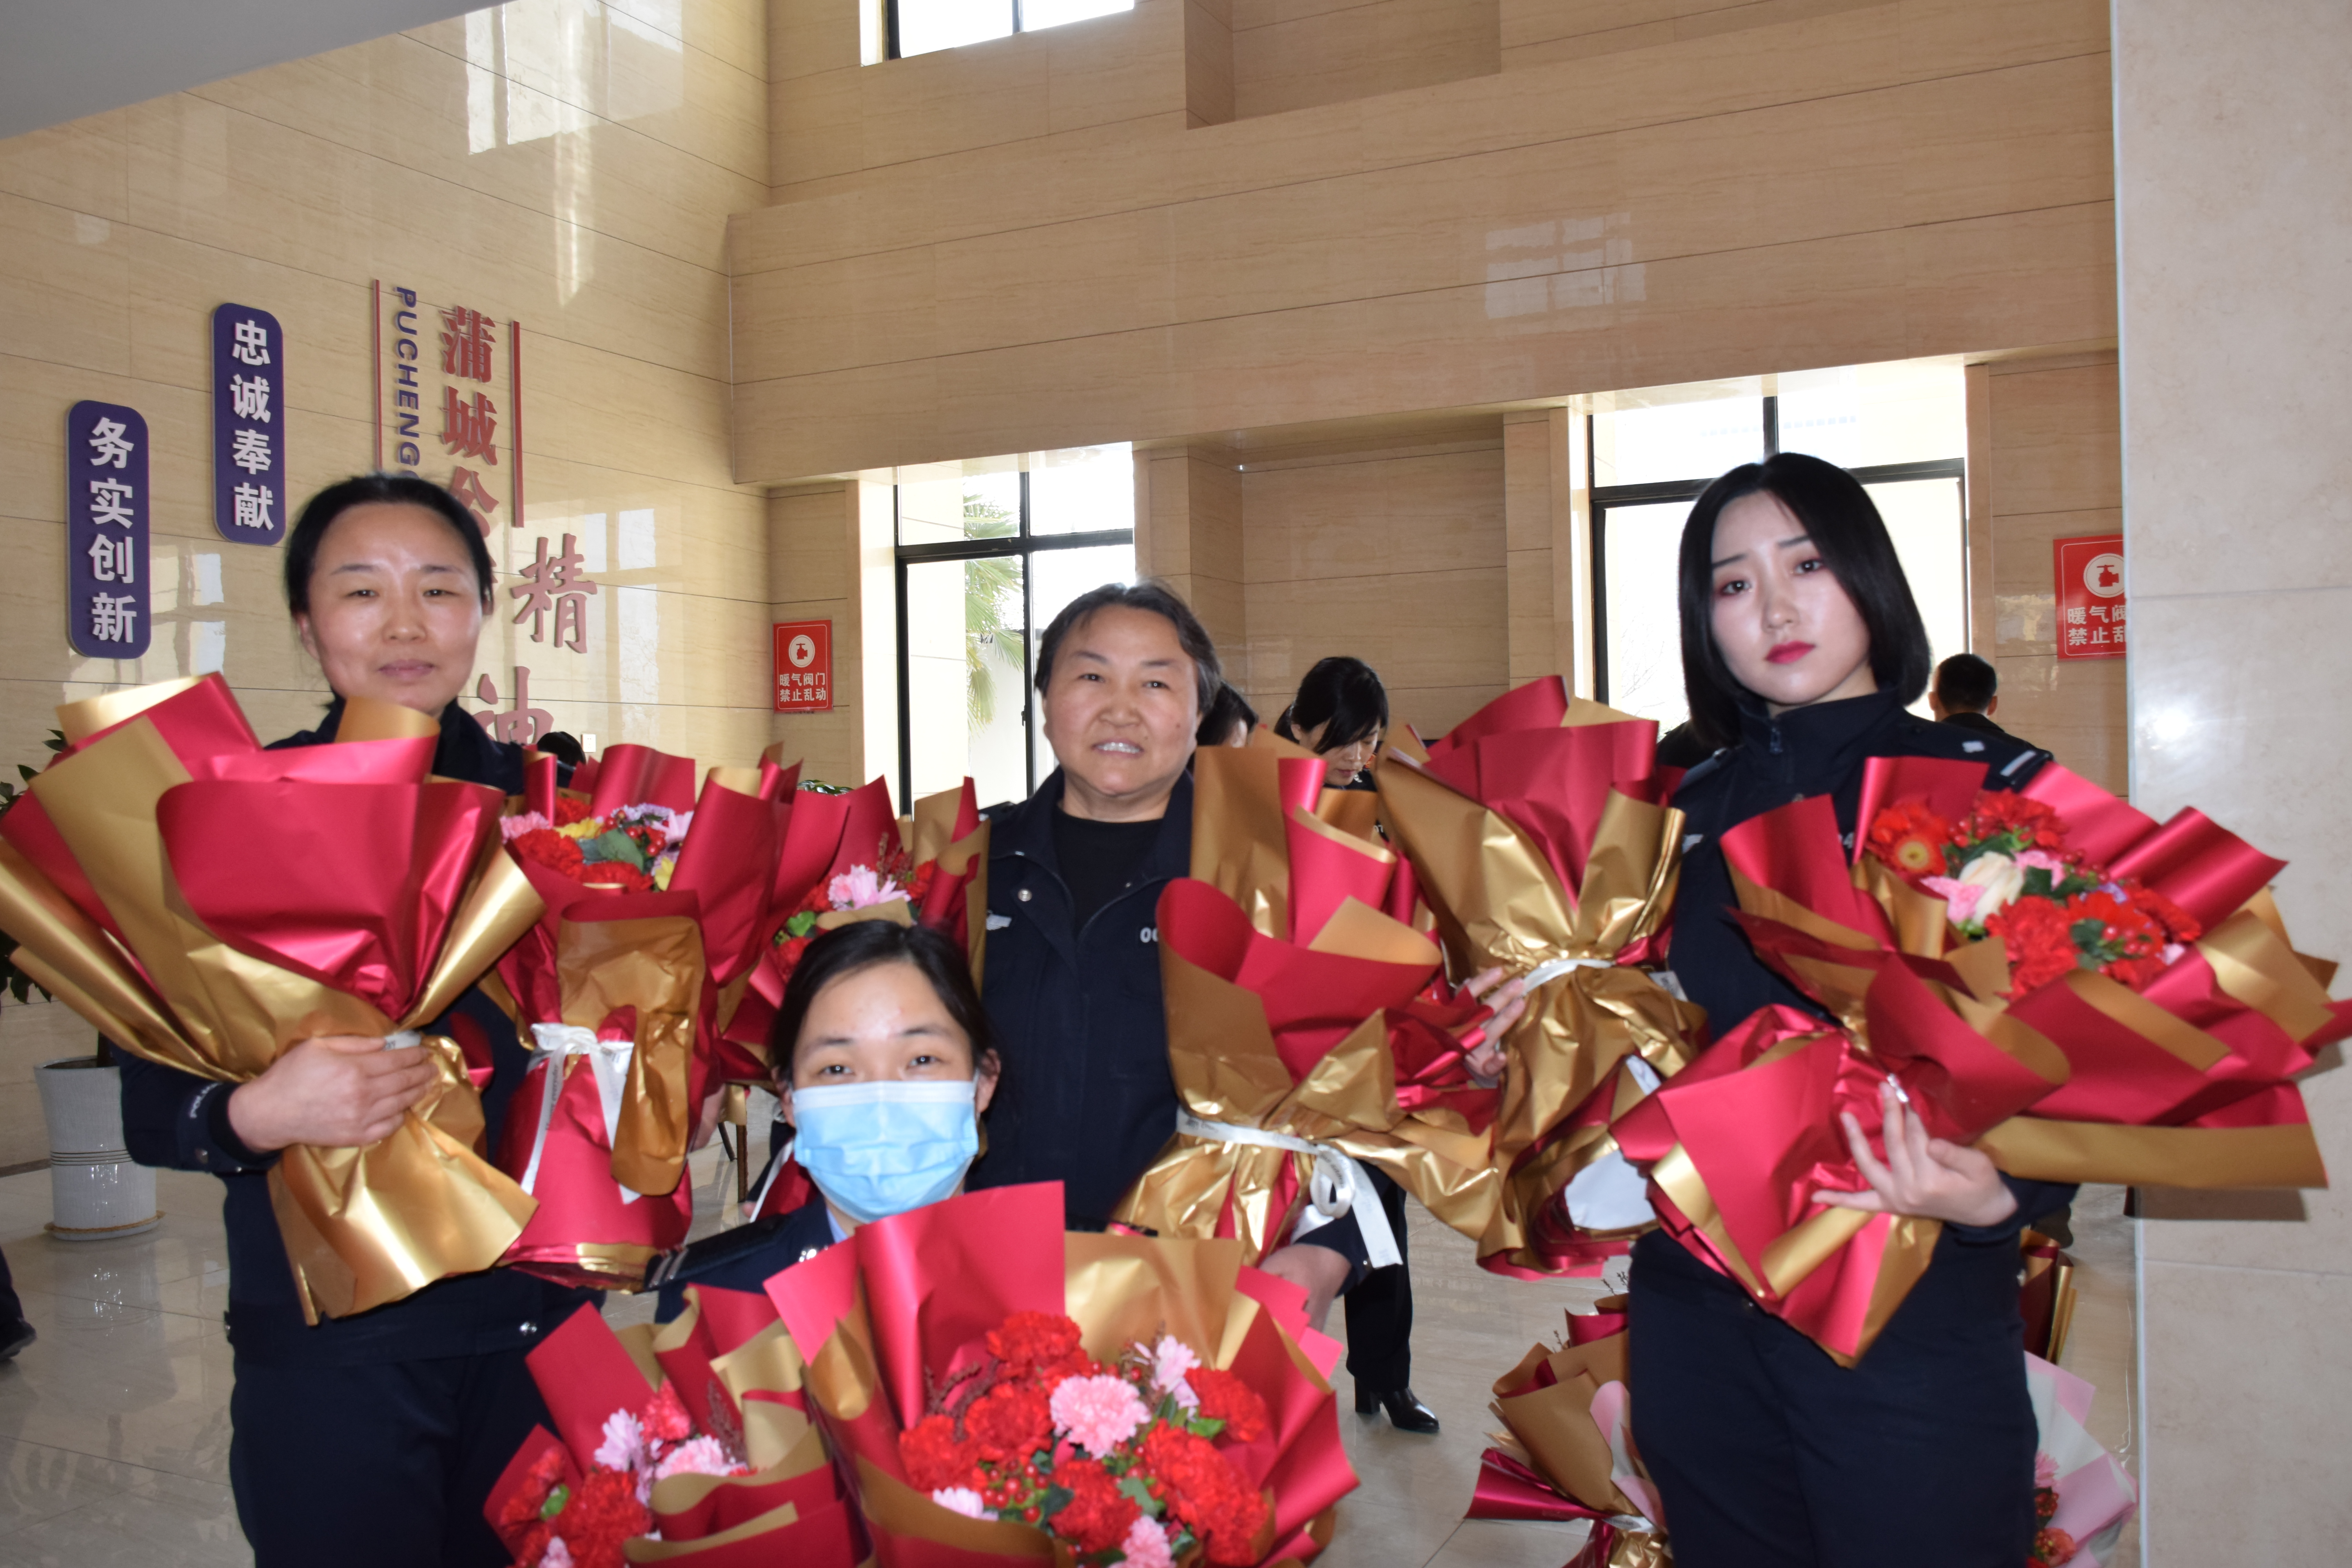 致敬平凡岗位上的她丨蒲城县公安局开展系列活动庆祝“三八”国际妇女节（图）